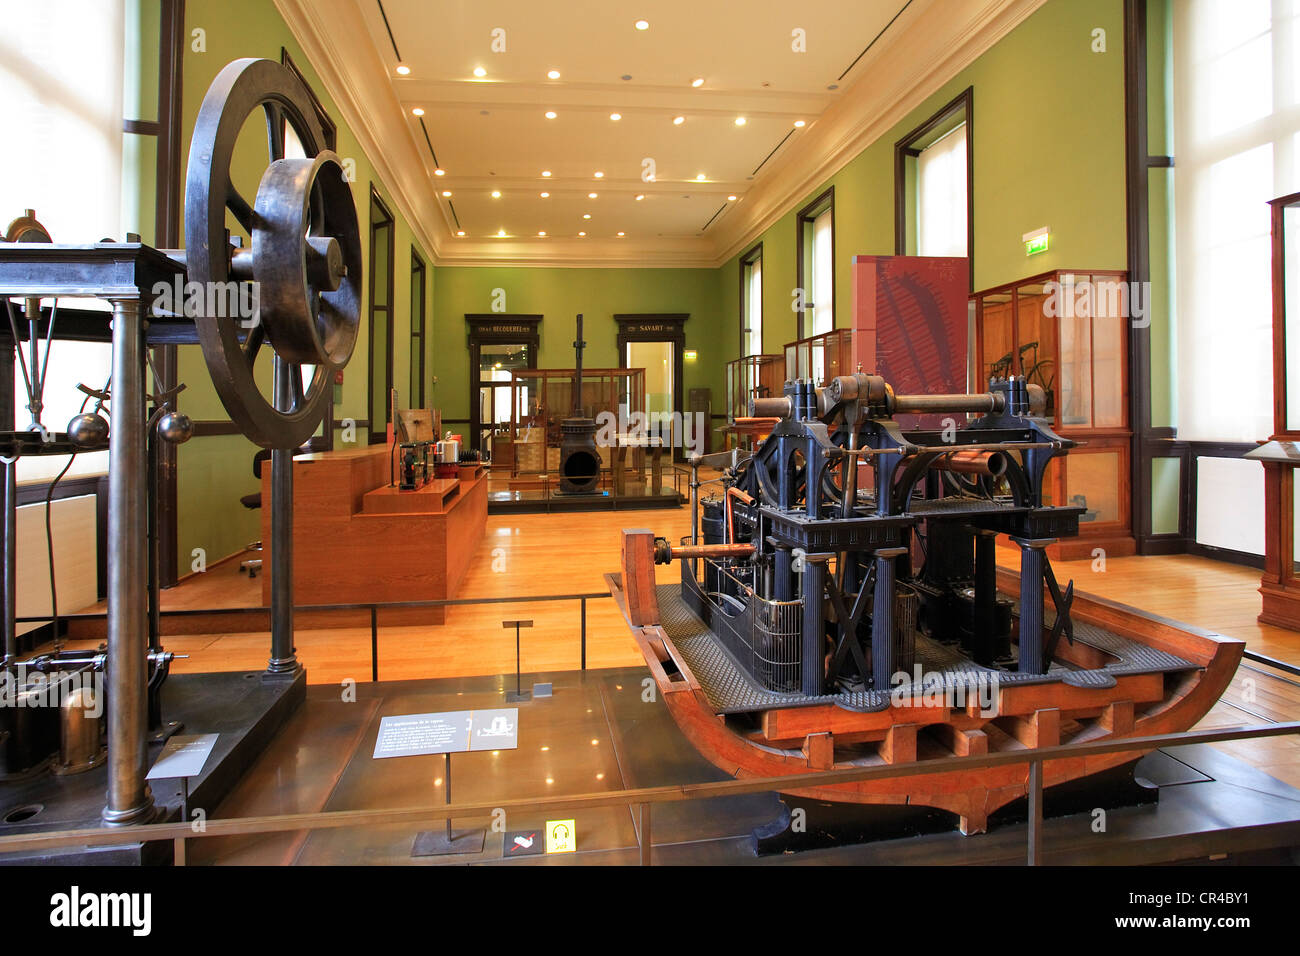 Francia, Parigi, Musée des Arts et Metiers (museo delle arti e dei mestieri), Meccanica camera, macchina a vapore che ha equipaggiato la Corvette Foto Stock